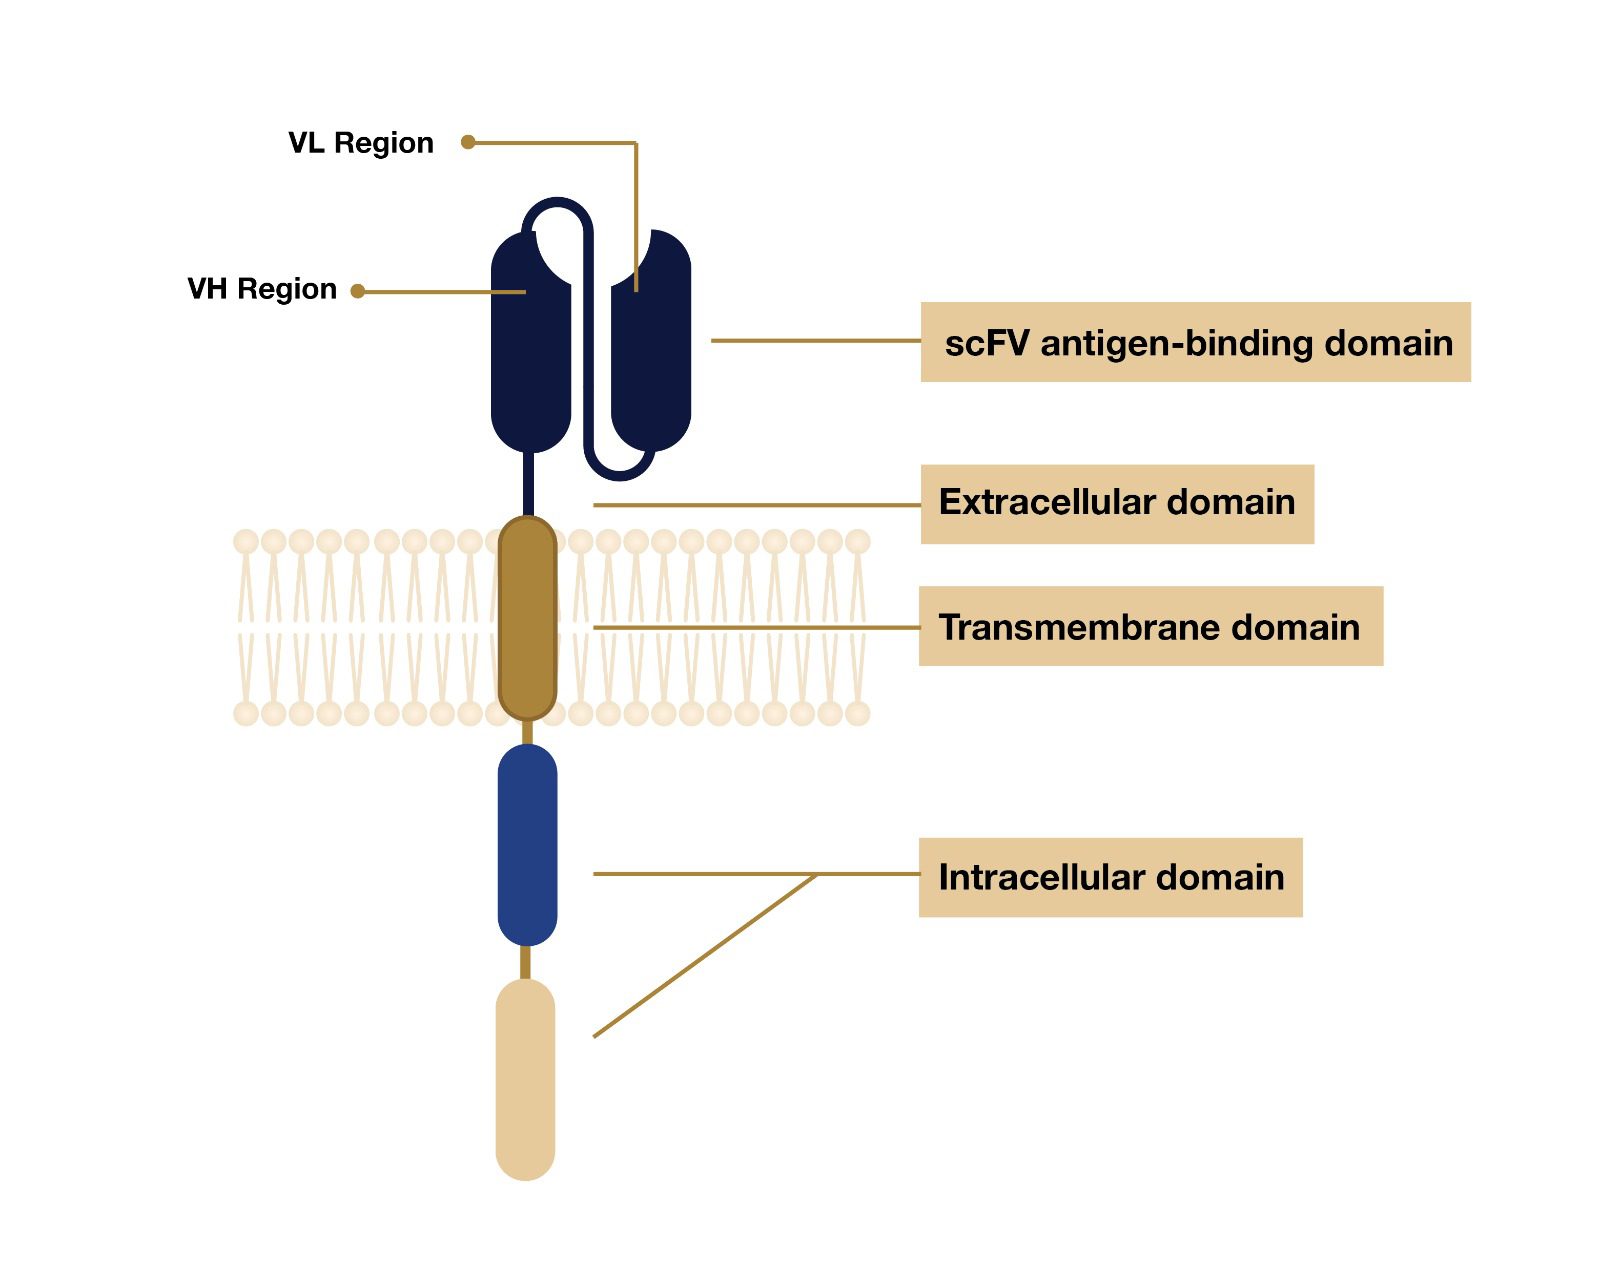 CAR-T 一般结构外观的可视化表示。 它显示了细胞外结构域、跨膜结构域和细胞内结构域的 3 个主要部分。